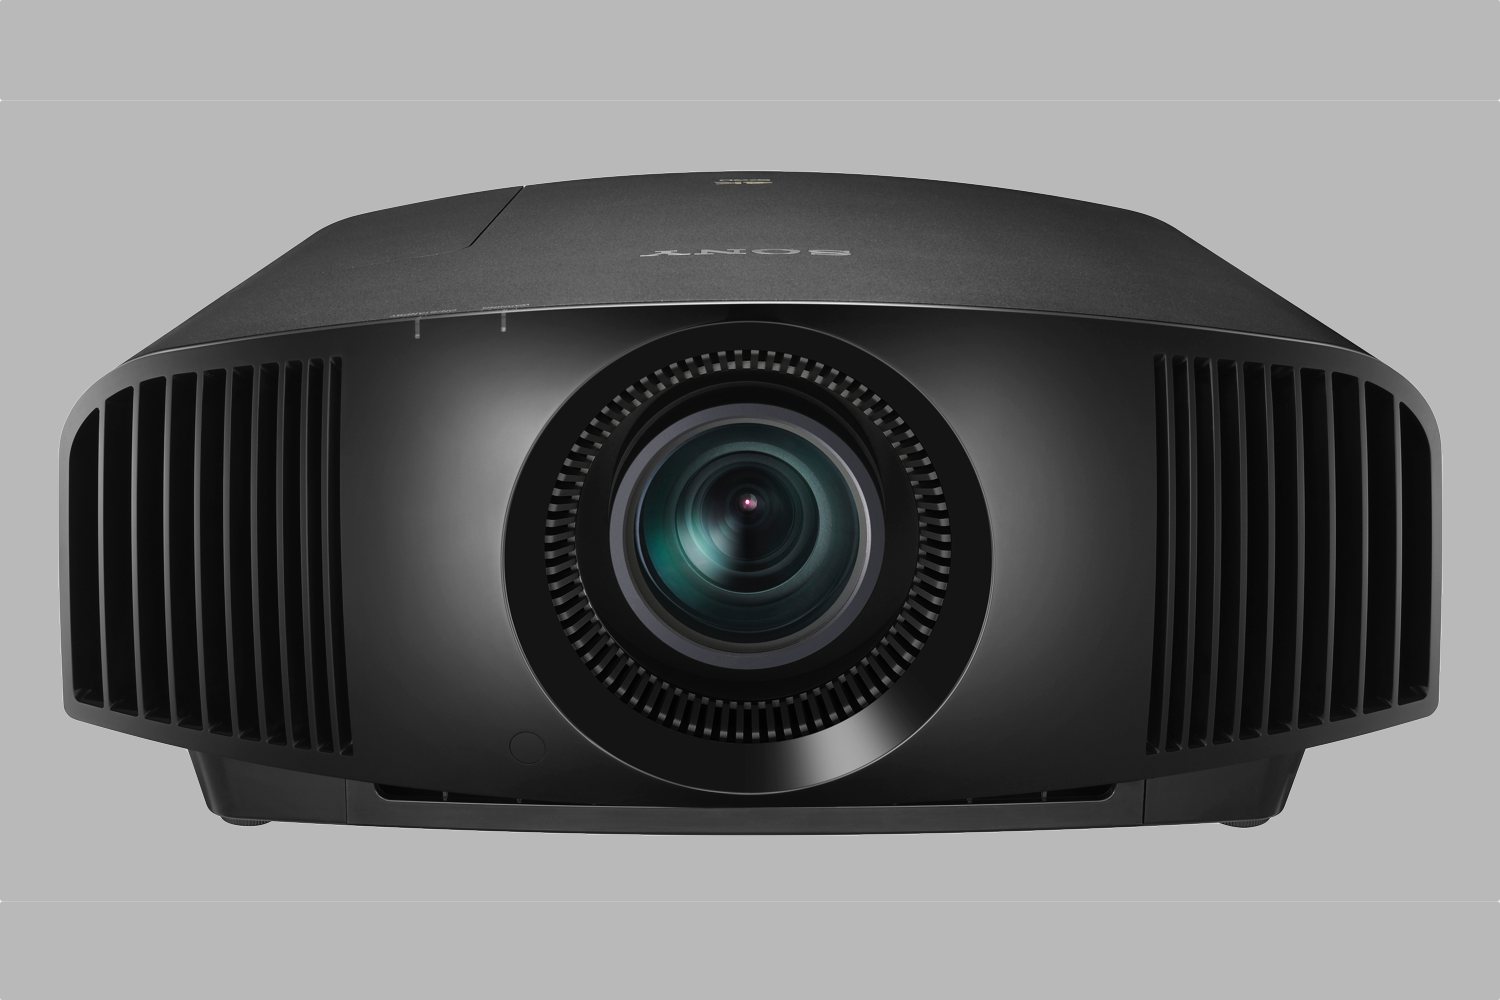 sony imax enhanced projectors tvs cedia 2018 vpl vw295es